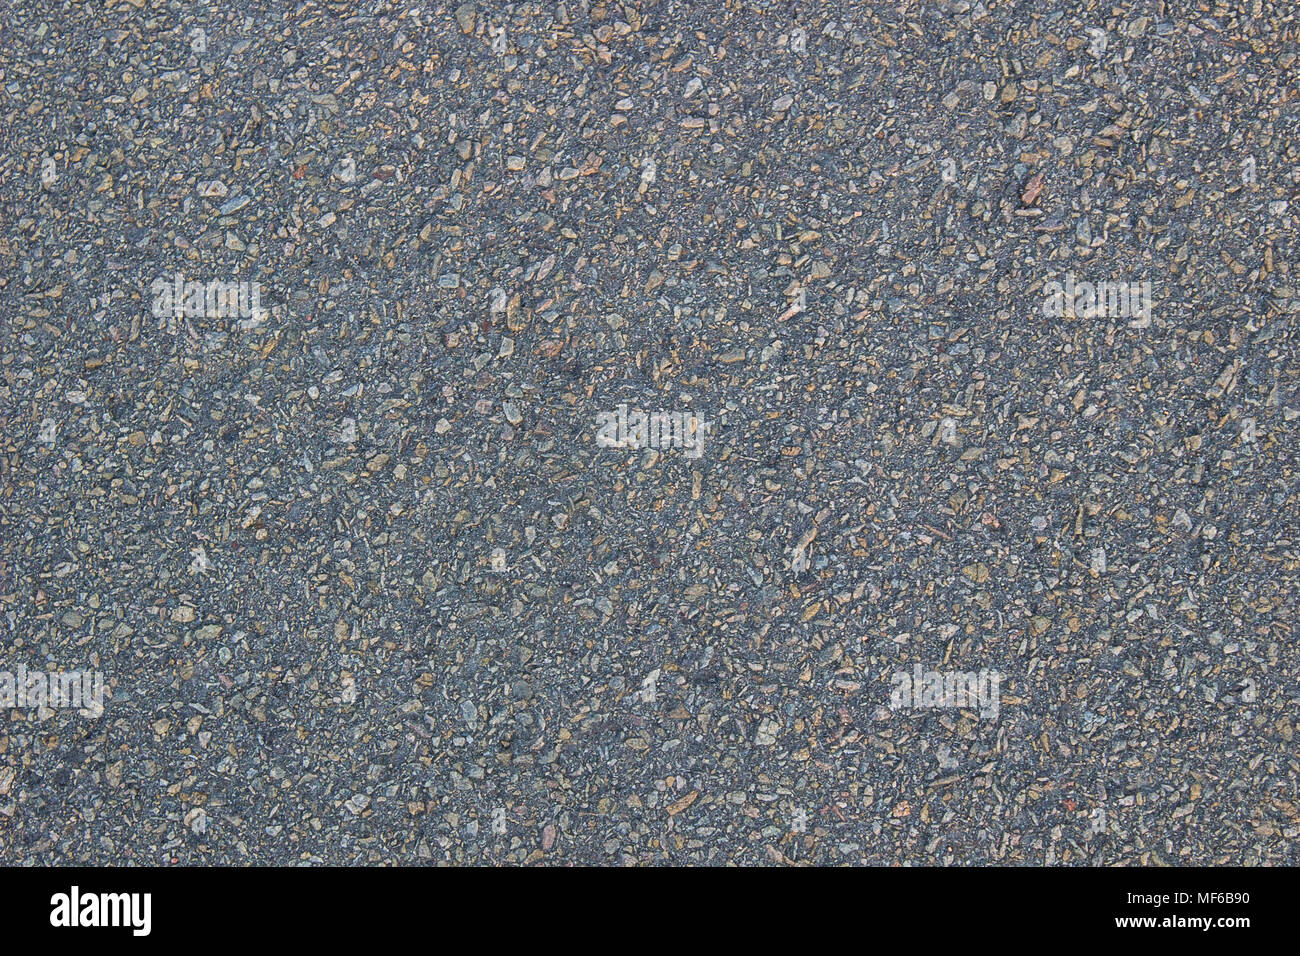 La texture d'asphalte avec des plaques de pierre, l'arrière-plan Banque D'Images